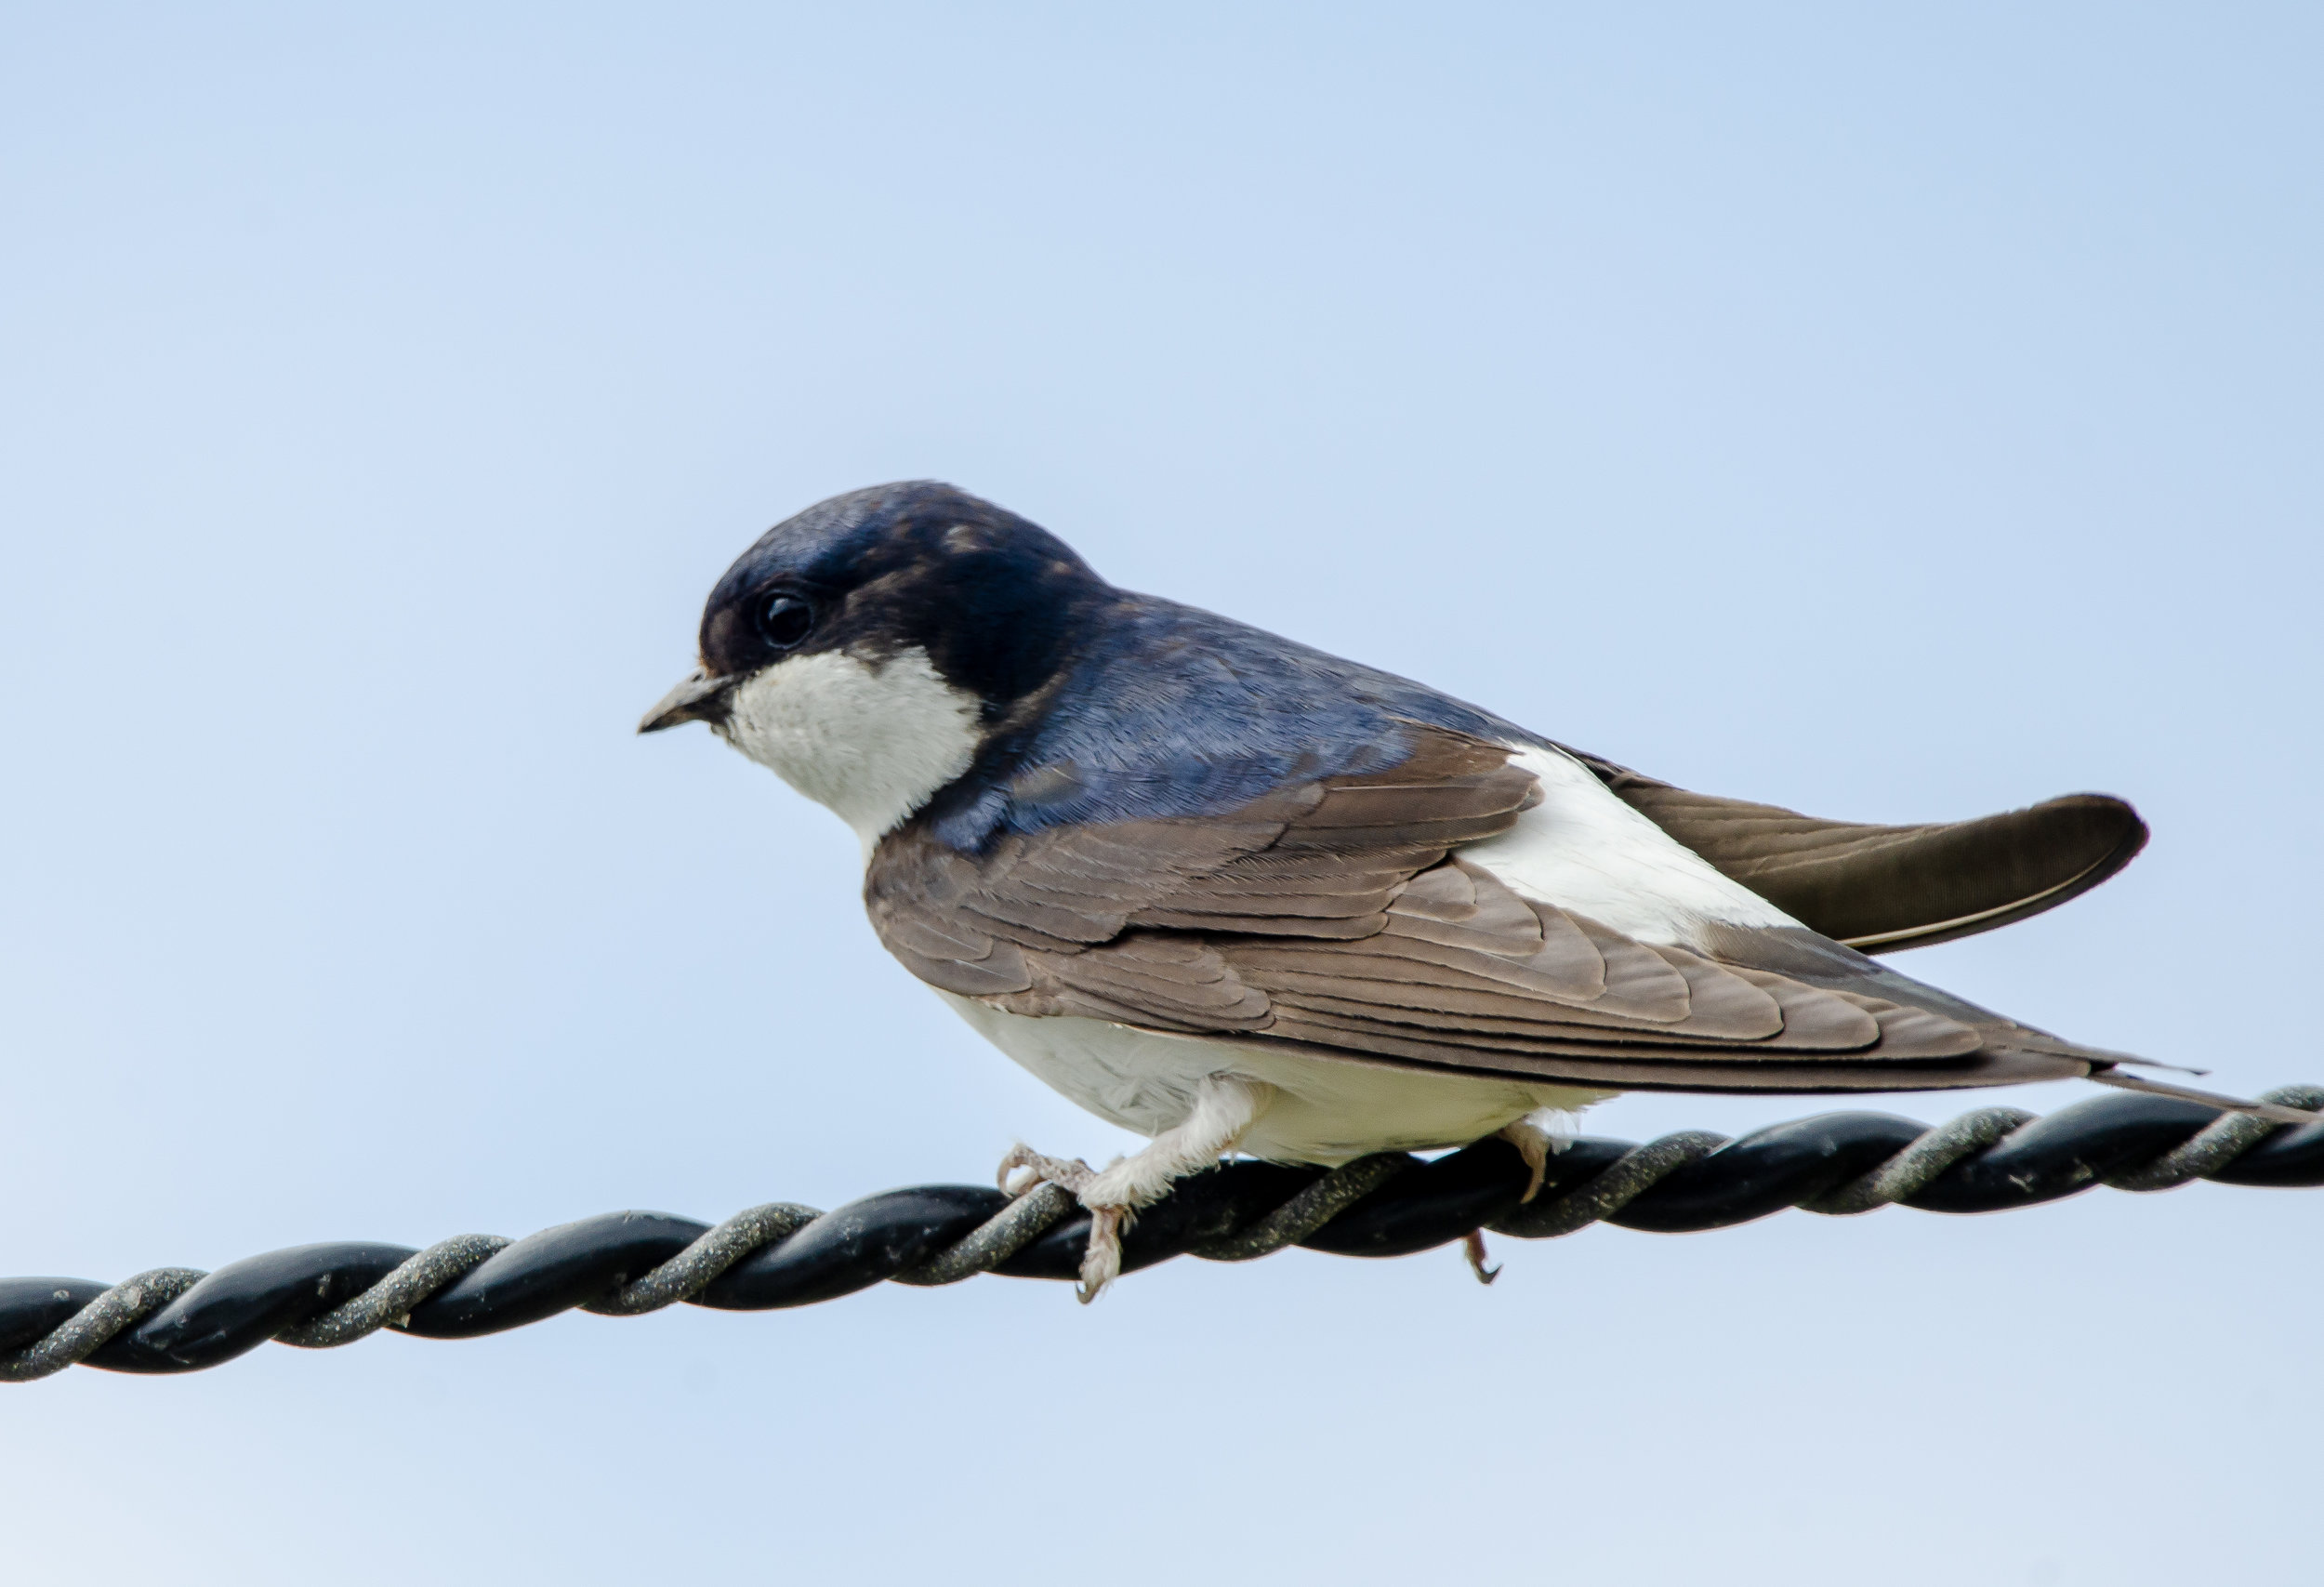 bird on a wire